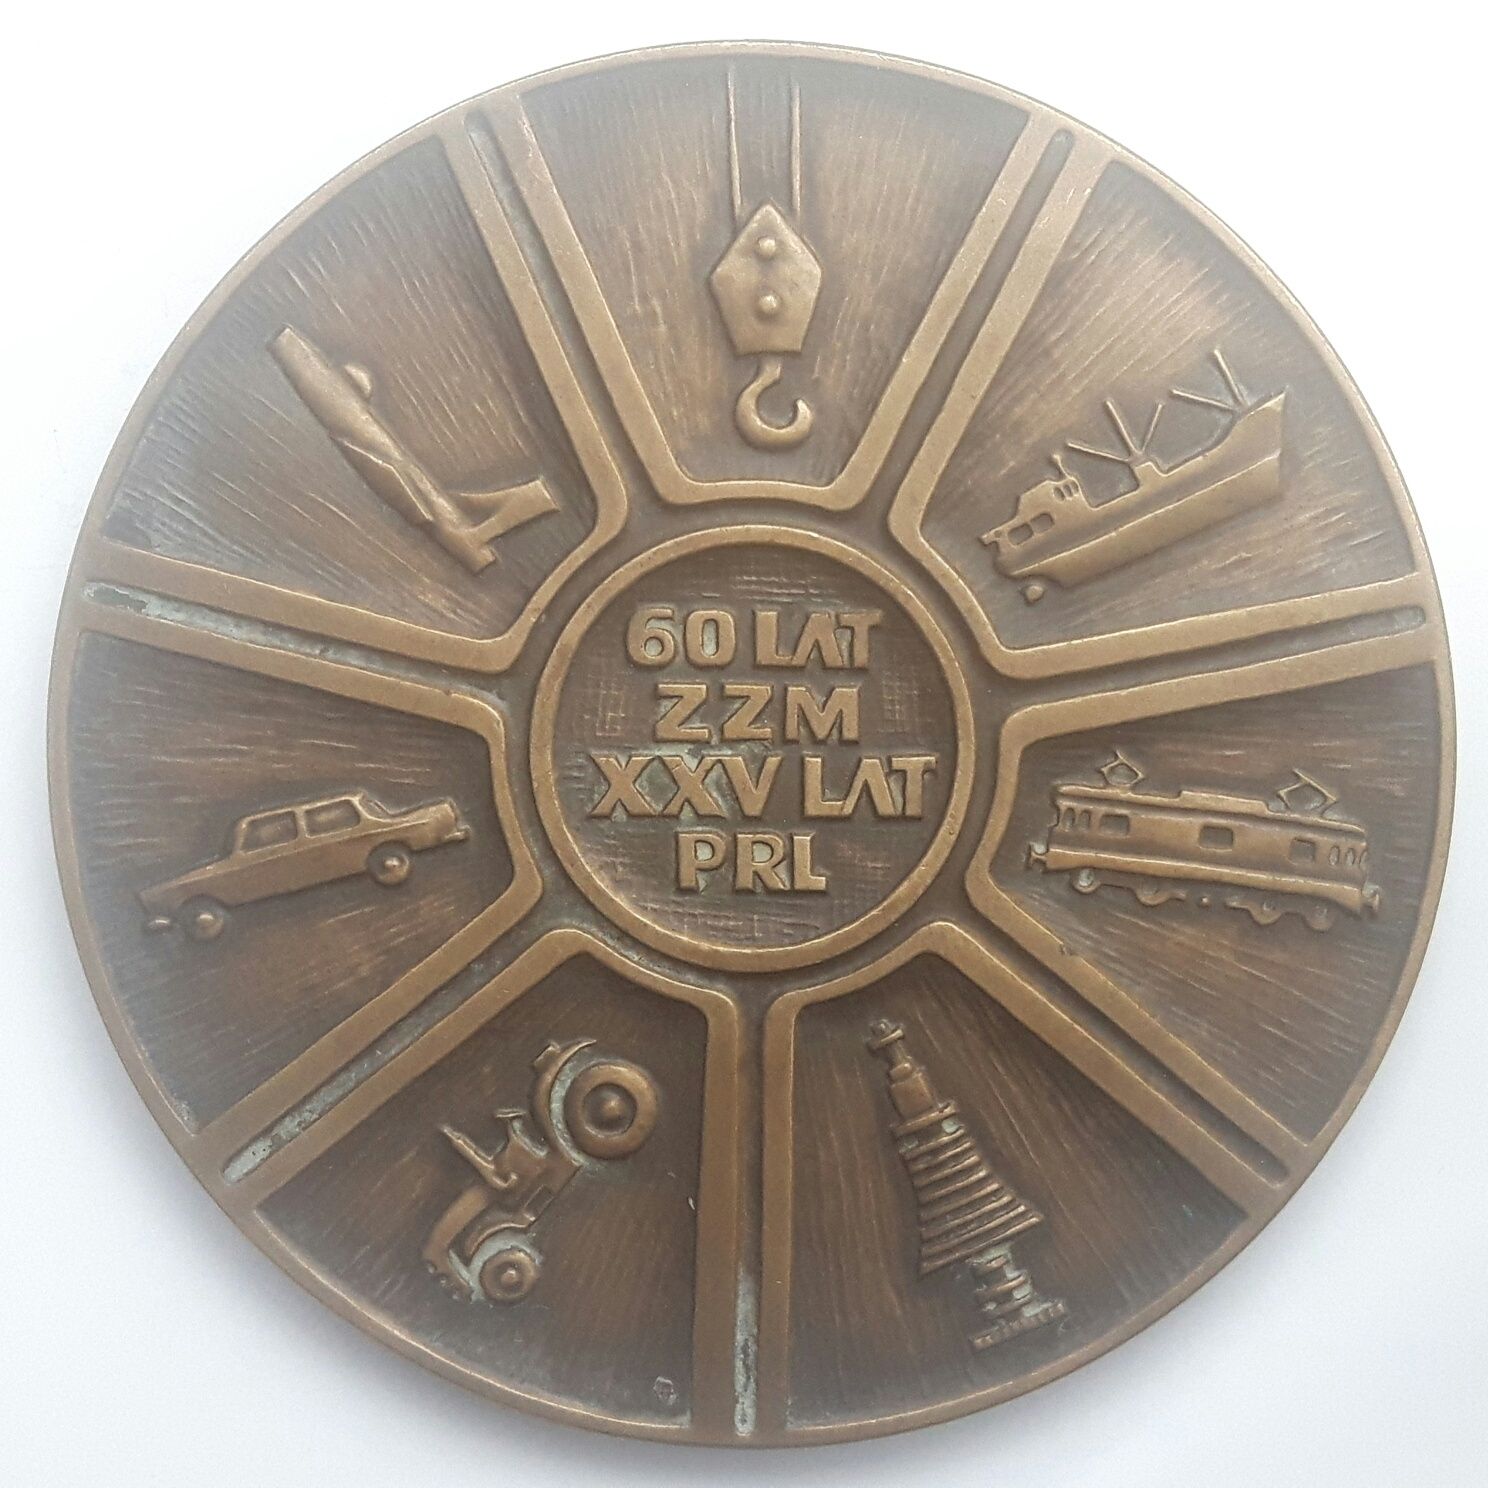 Medal 60 lat ZZM, XXV lat PRL